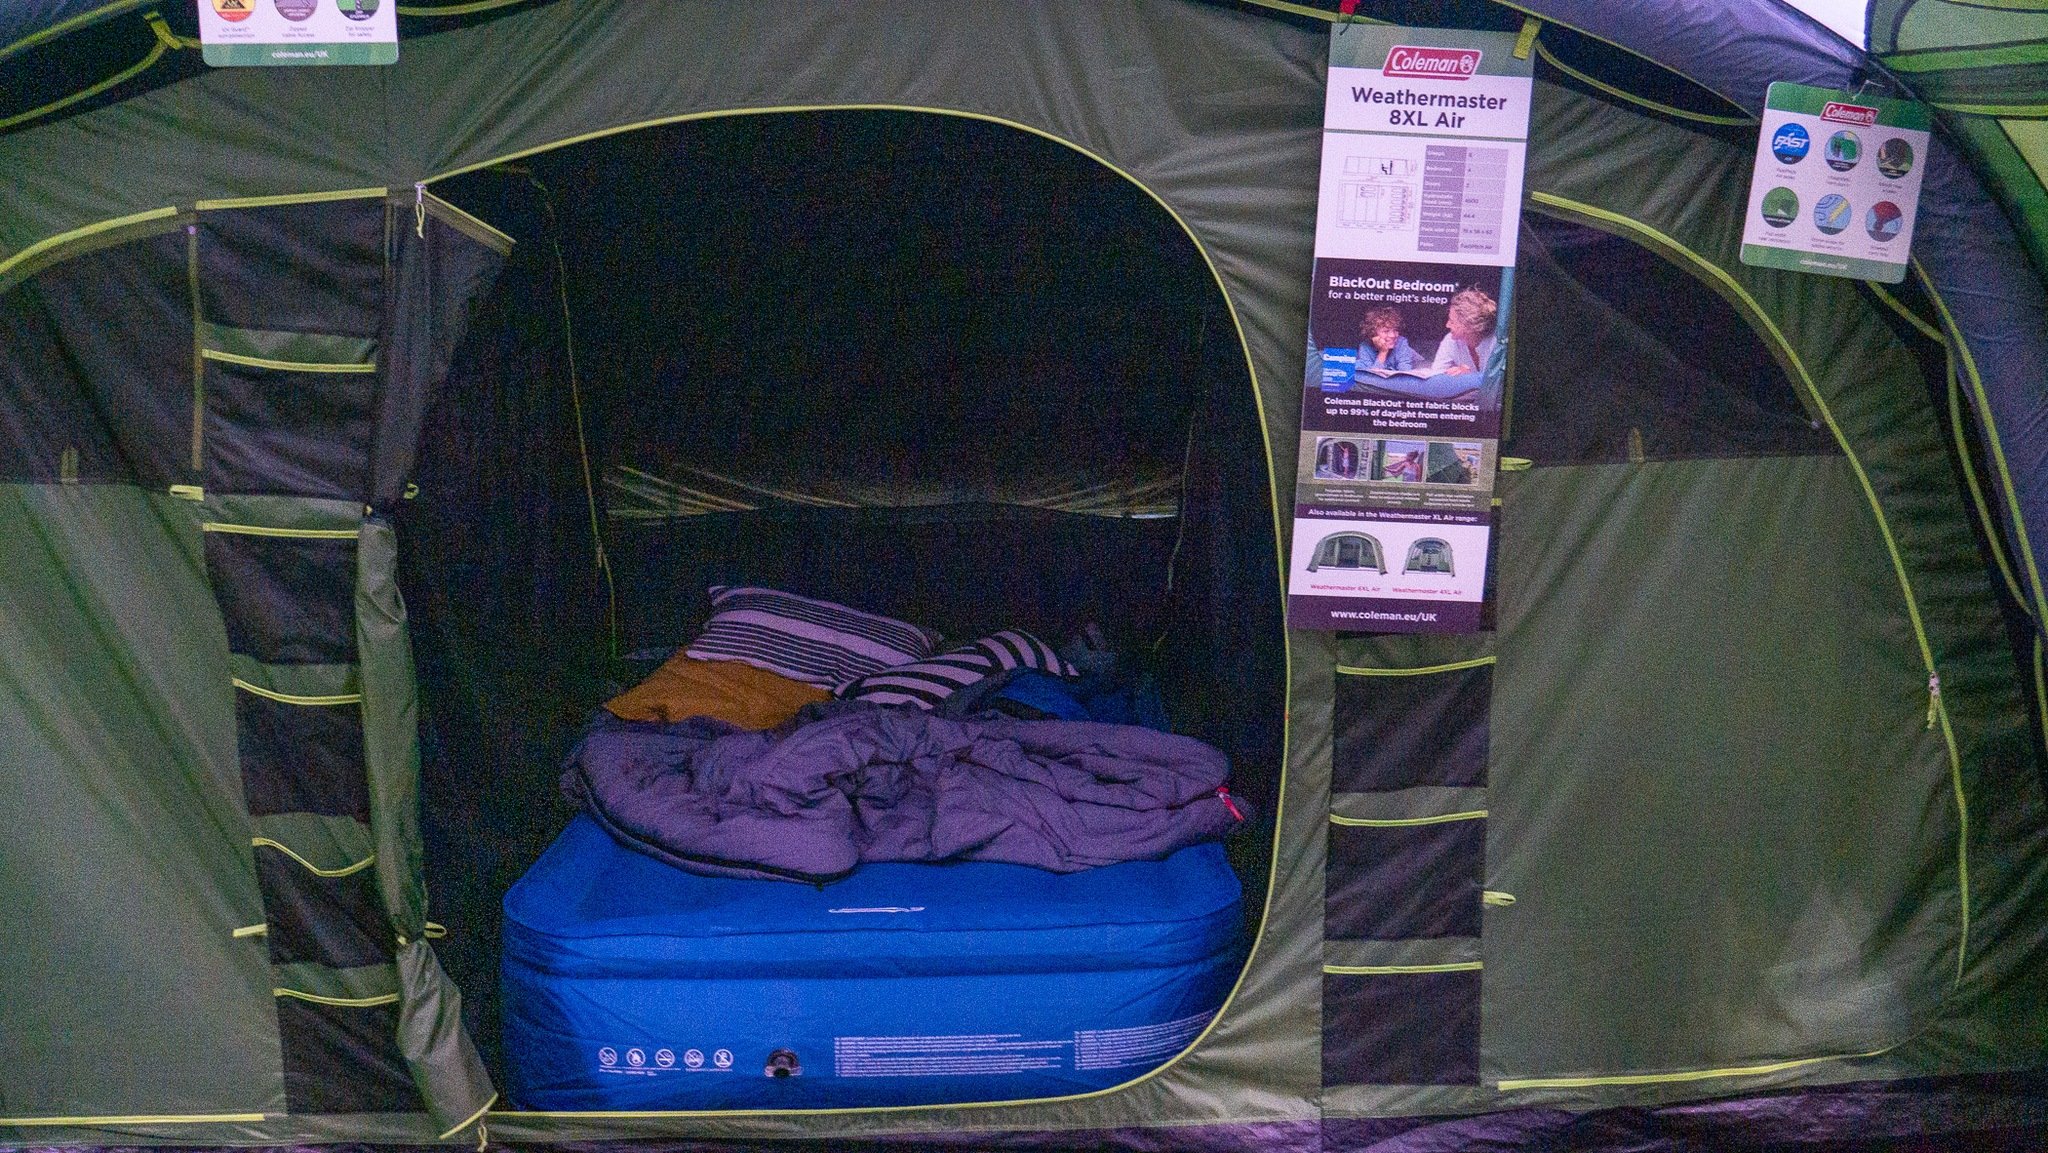 Bedrooms in the Weathermaster 8XL tent